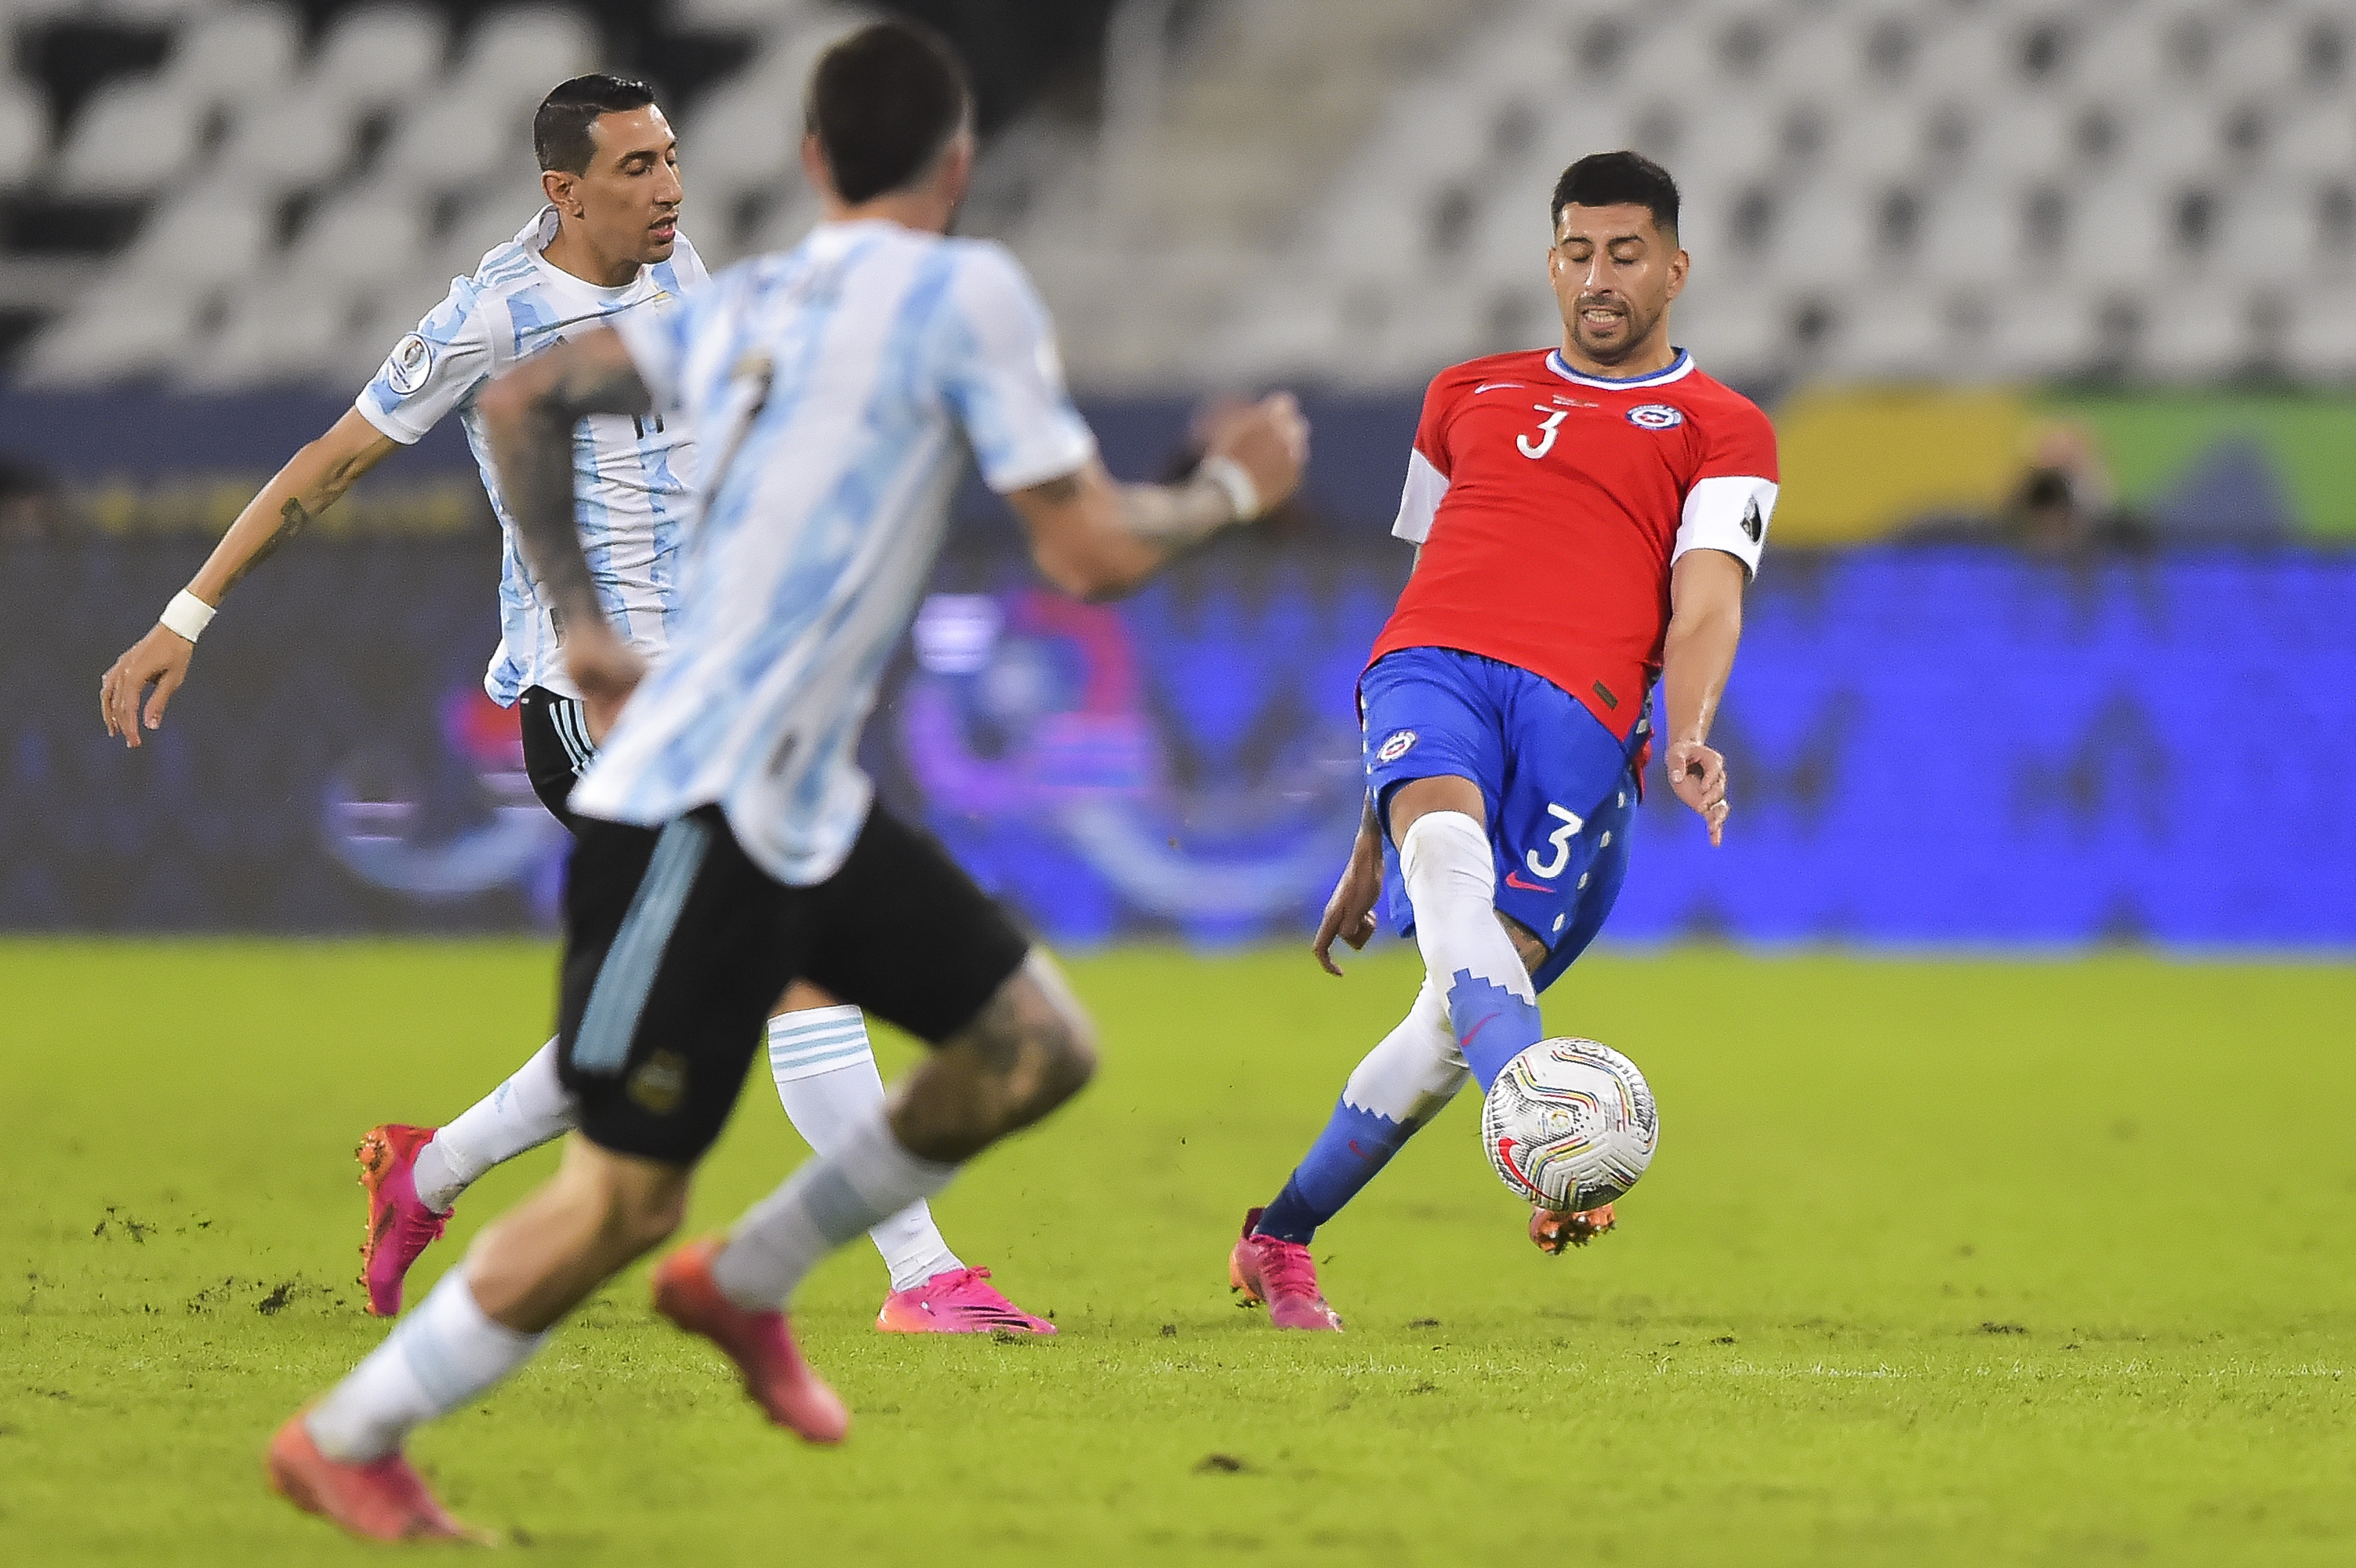 Argentina Vs Chile Copa America 2021